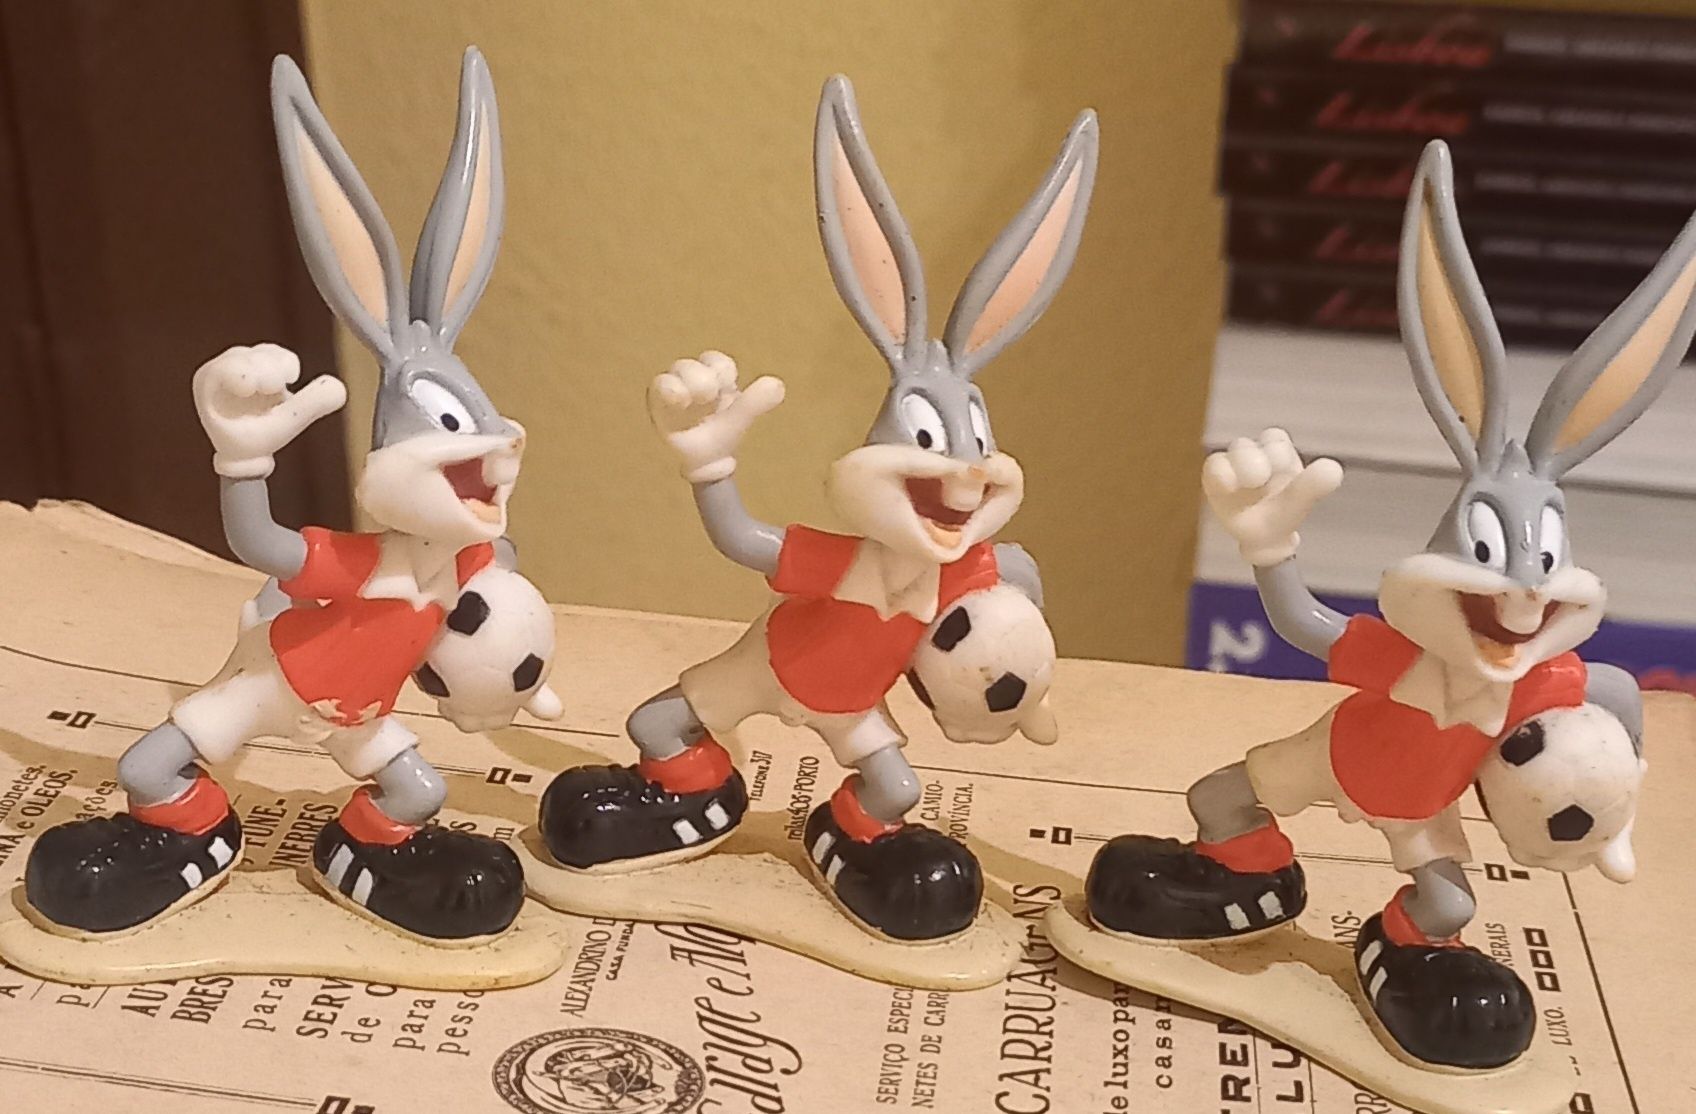 Lote de 6 bonecos em PVC do Bugs Bunny, 1996.